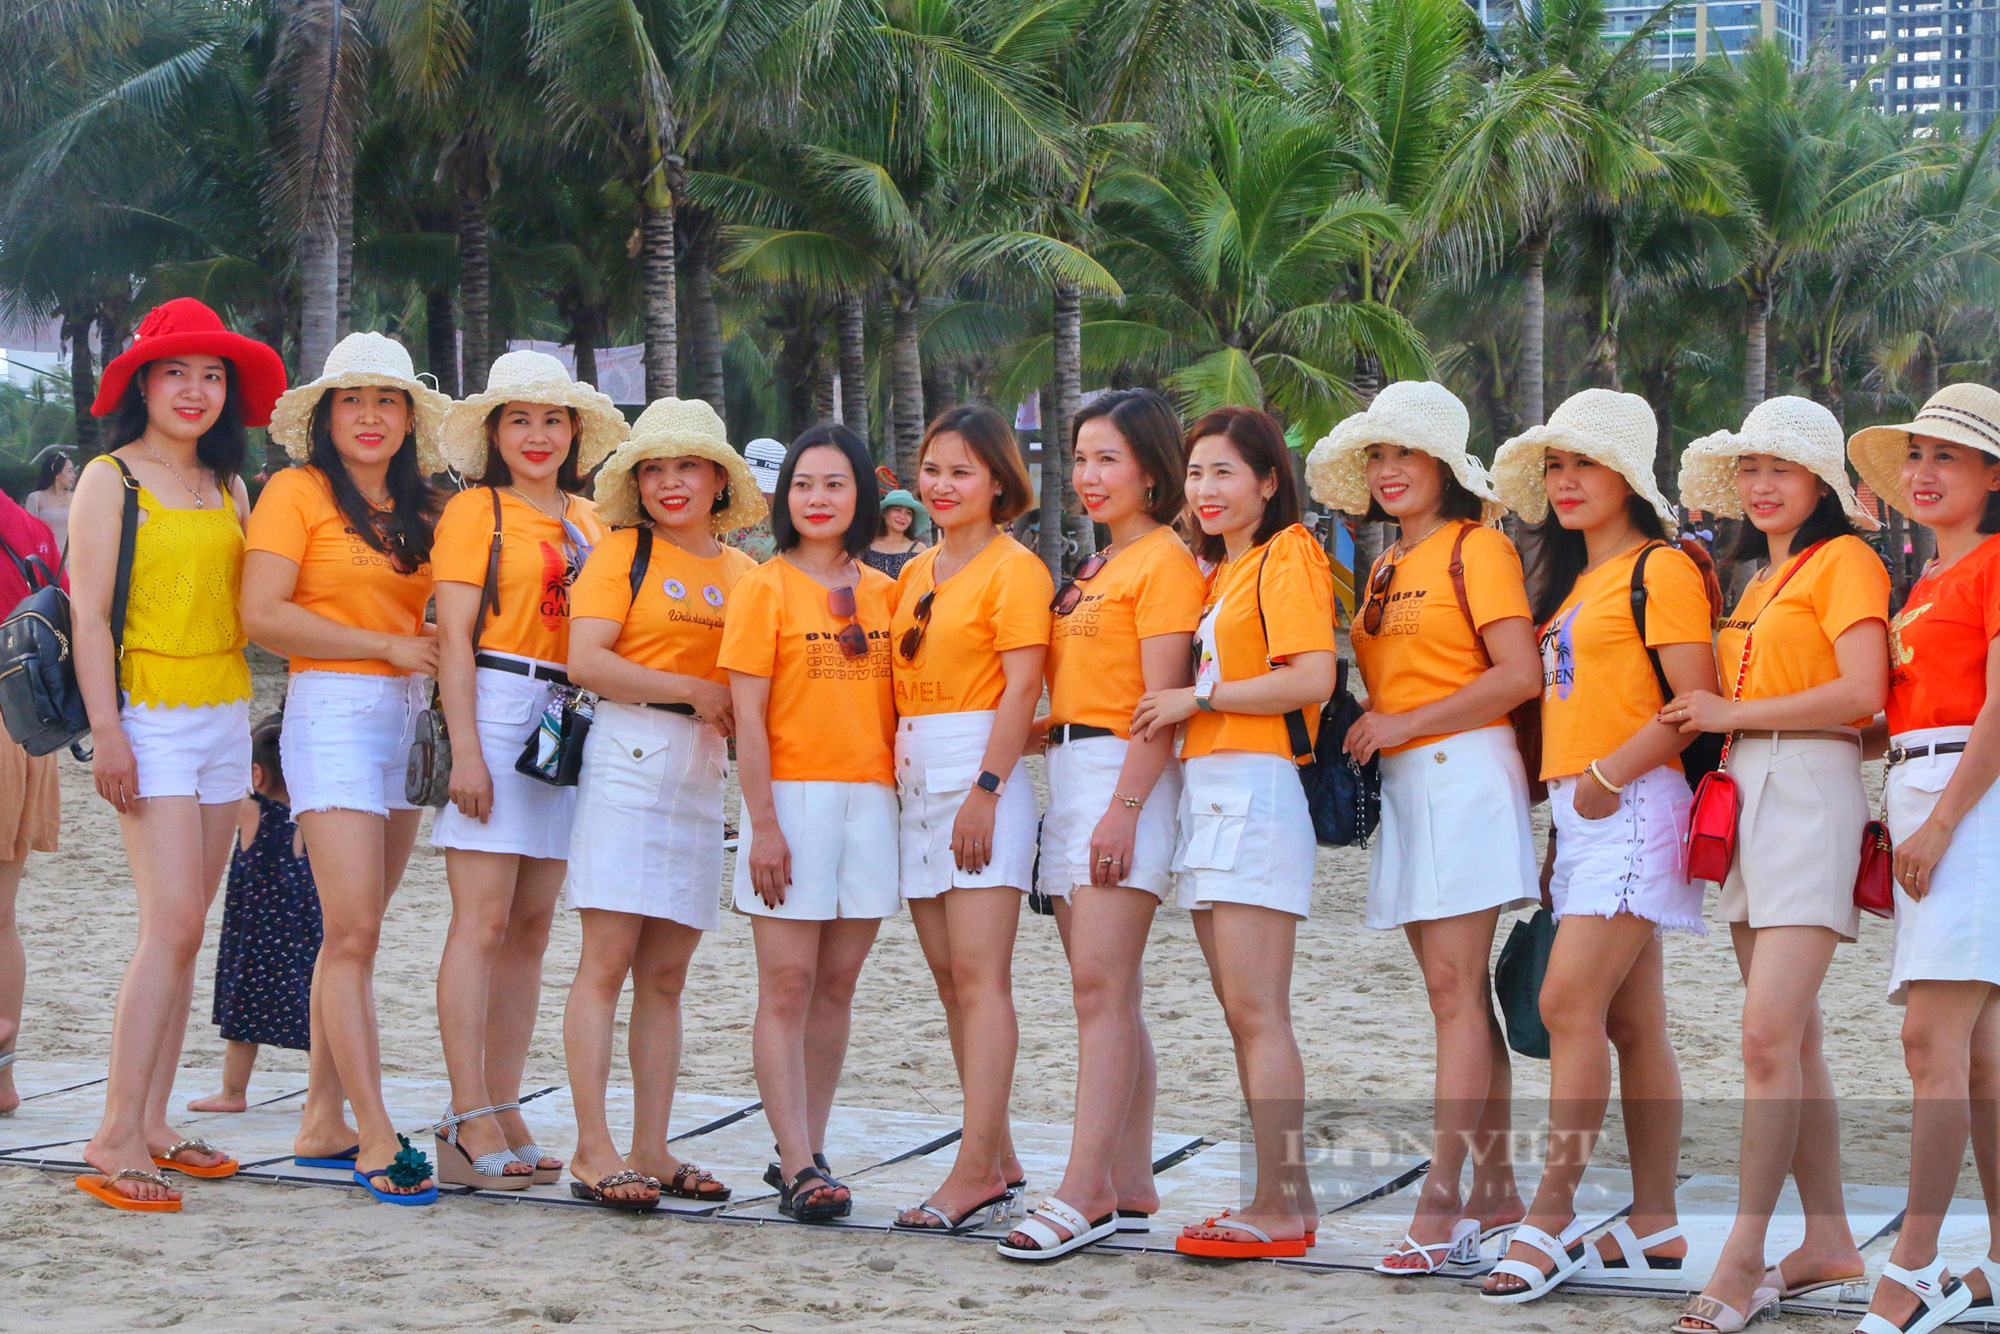 Du khách đổ về các bãi biển Đà Nẵng trong ngày đầu kỳ nghỉ lễ 30/4-1/5 - Ảnh 5.